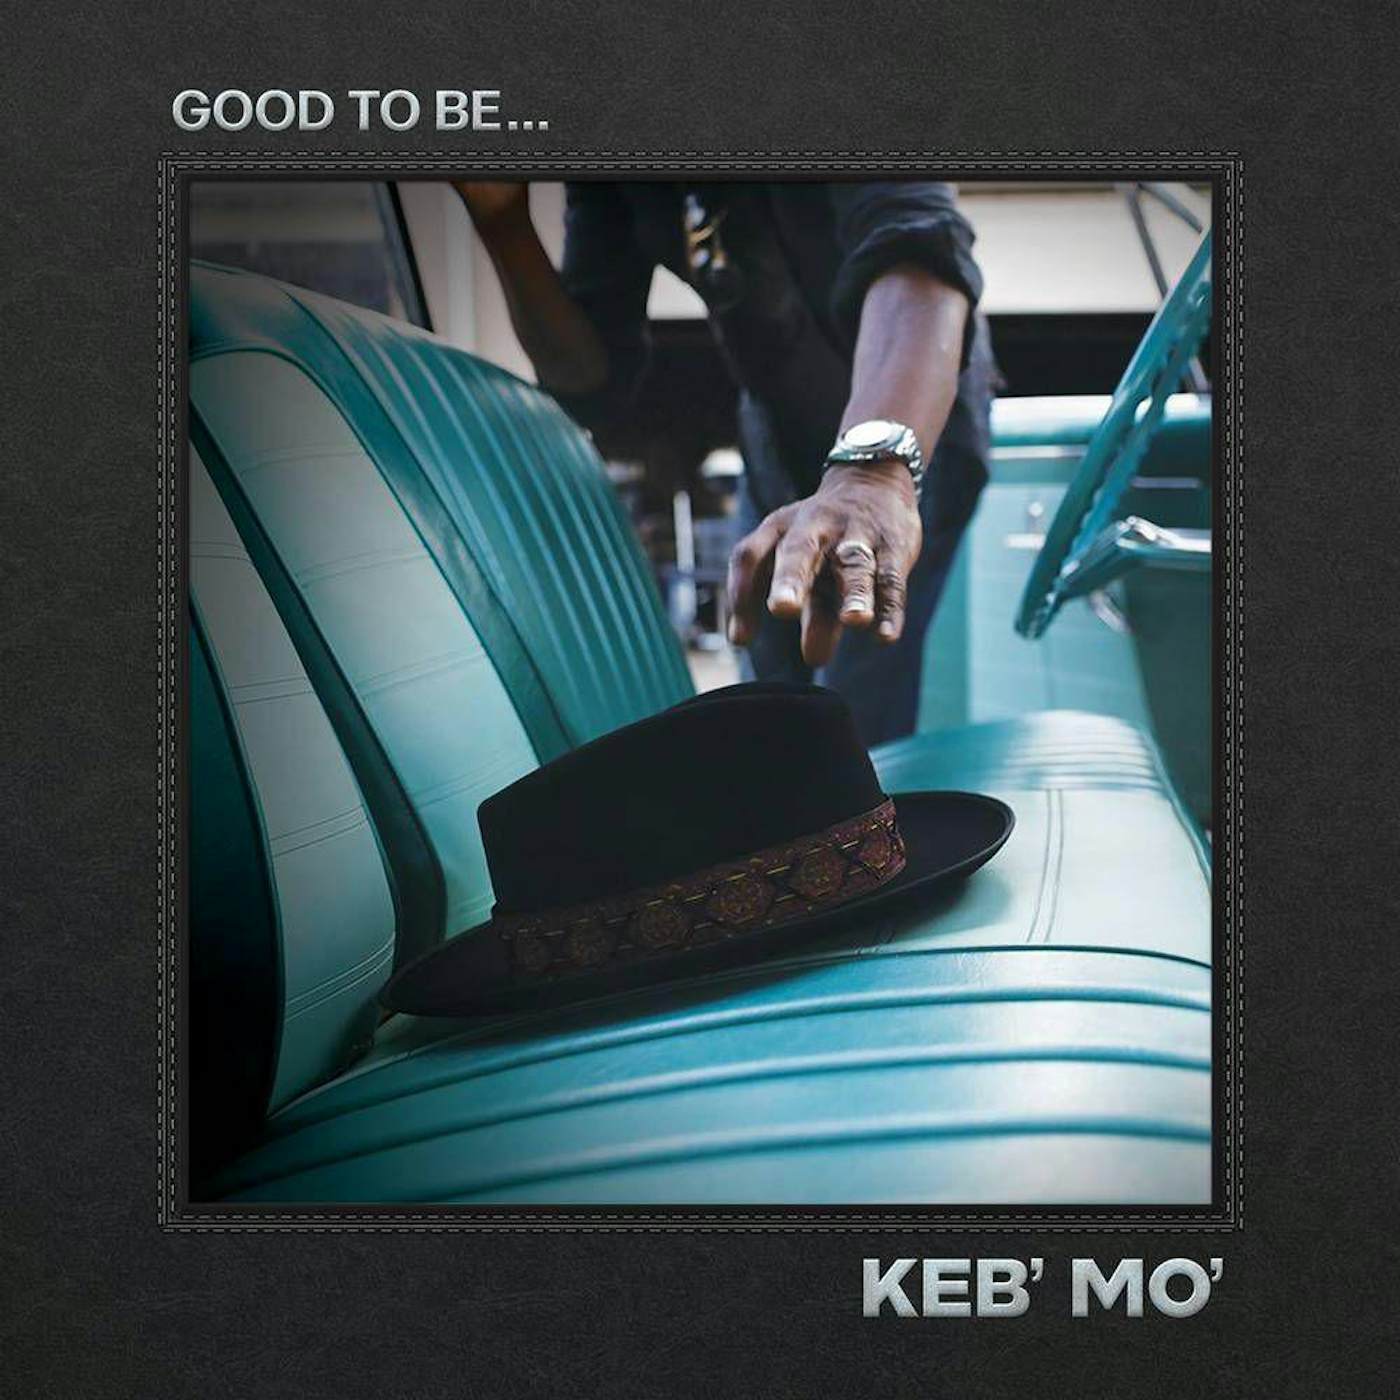 Keb' Mo' GOOD TO BE CD